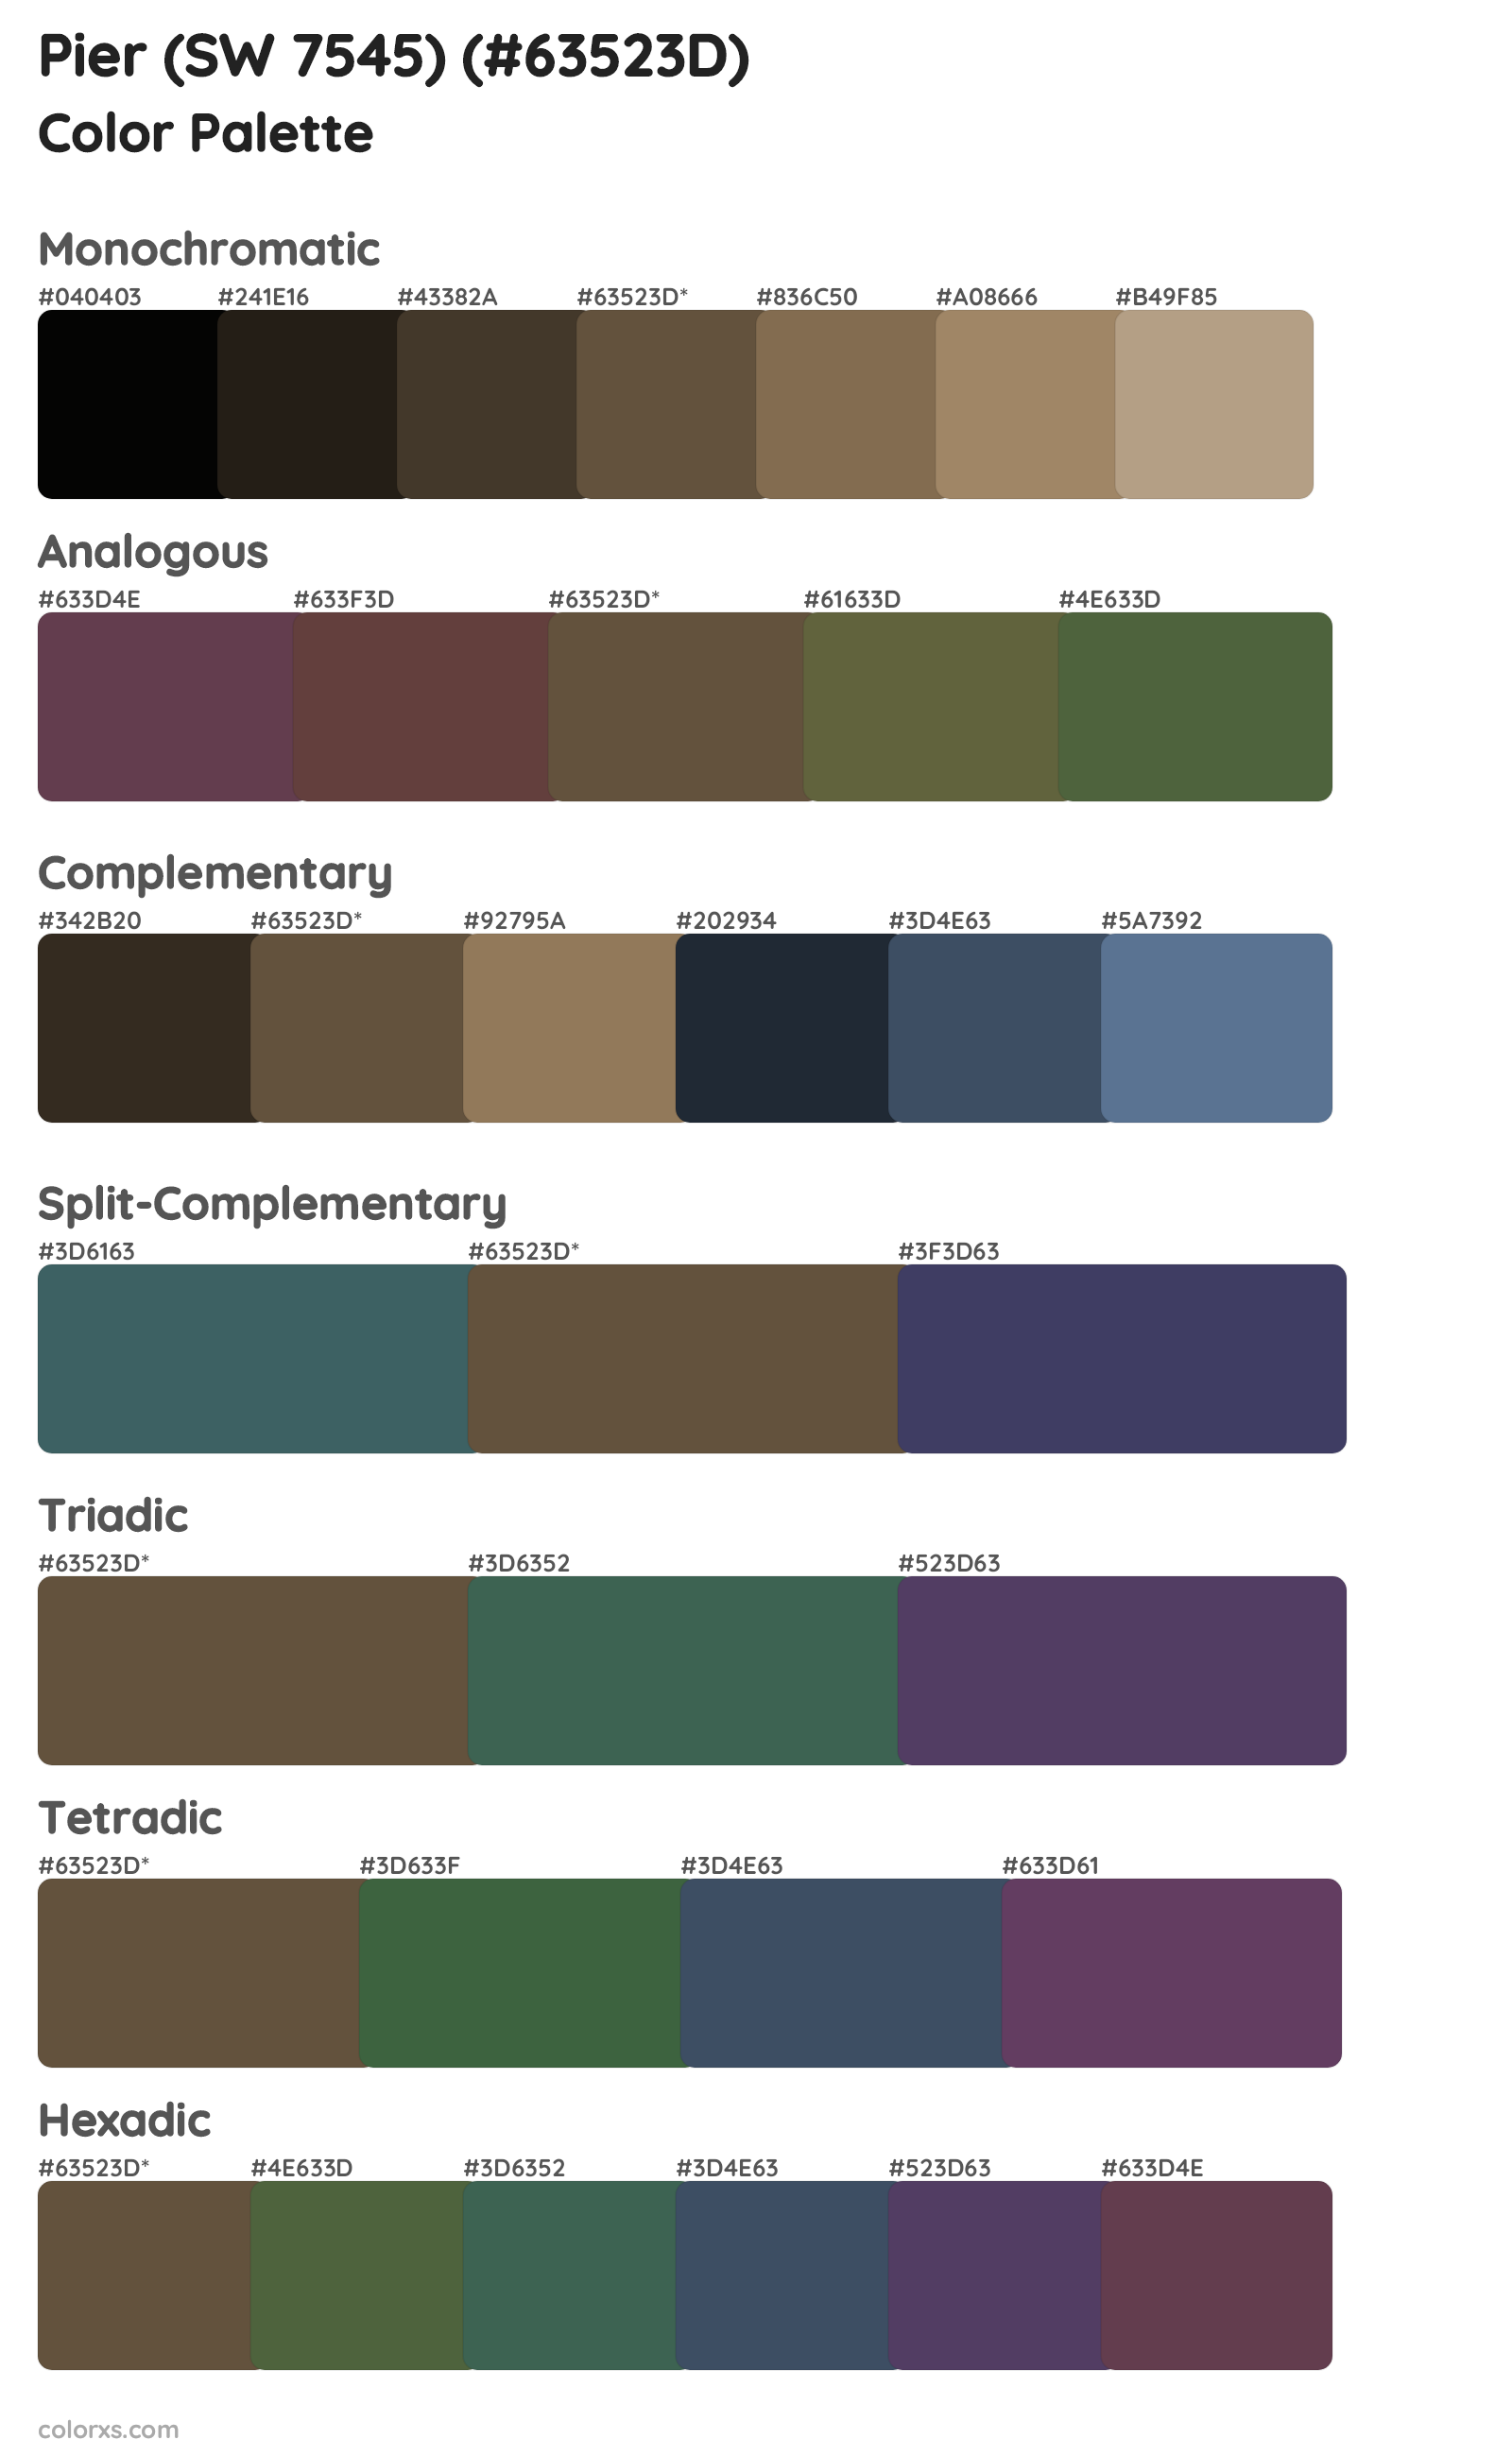 Pier (SW 7545) Color Scheme Palettes